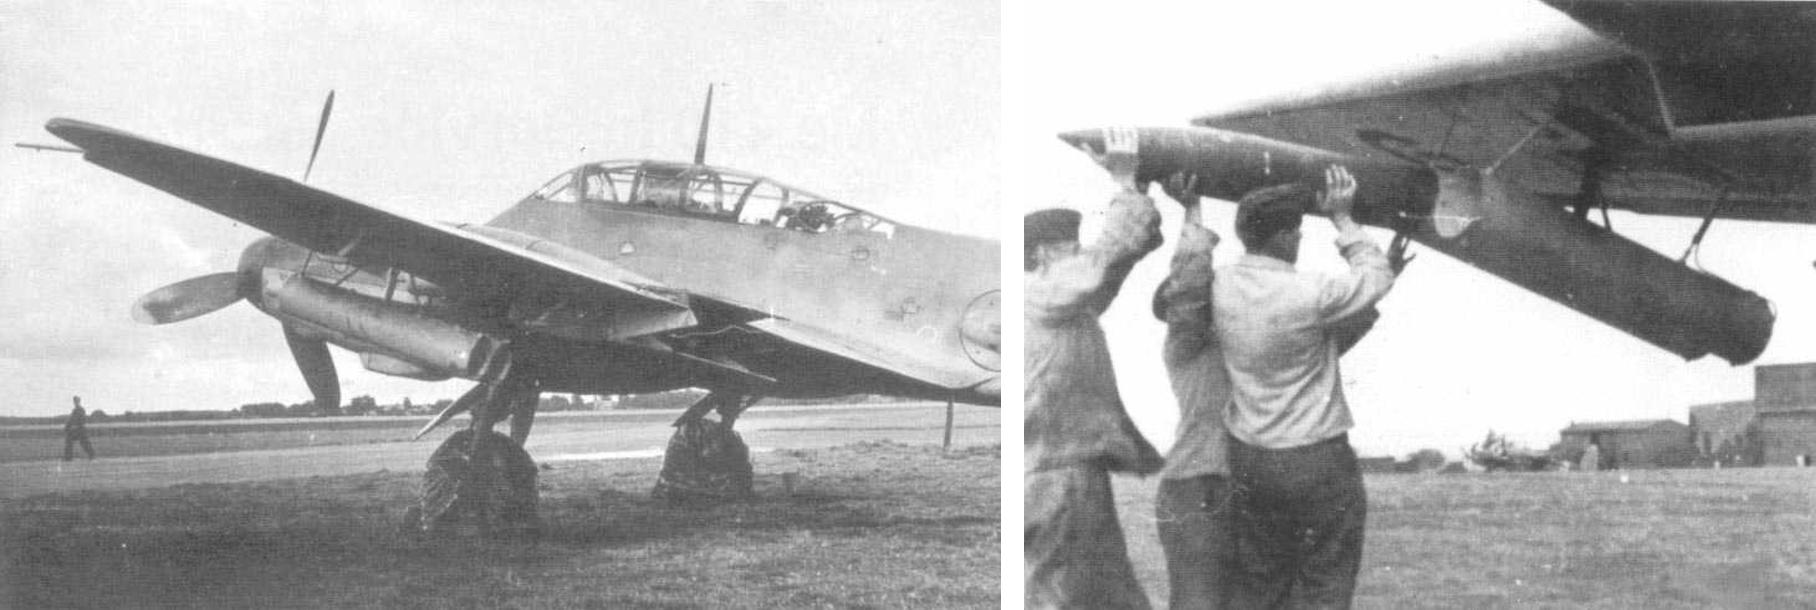 Messerschmitt Me 410 con razzi da 210 mm.